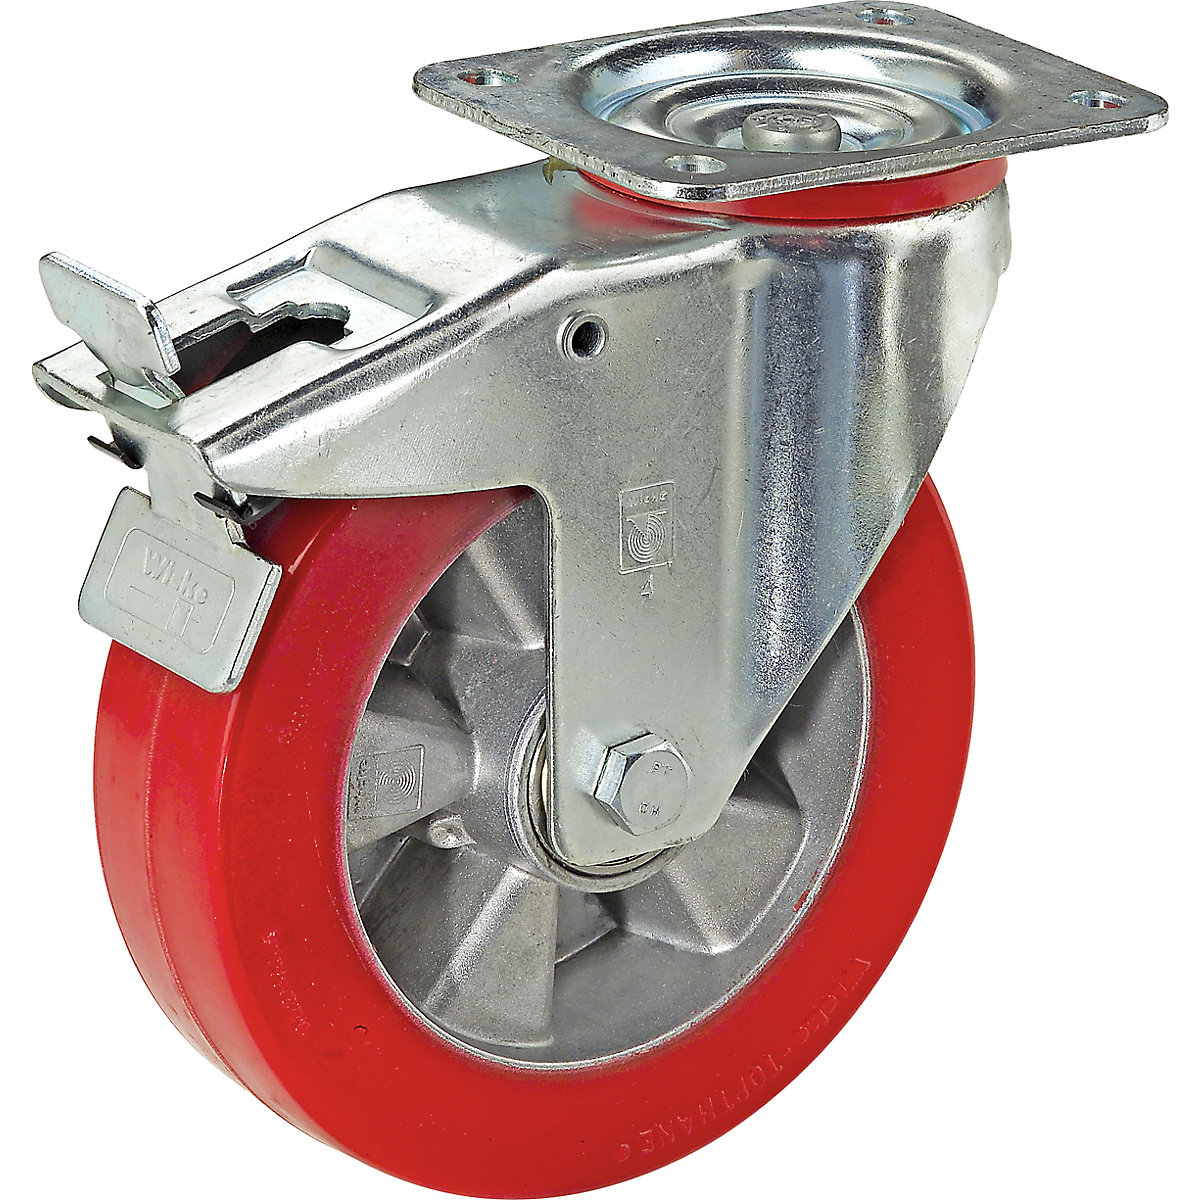 Polyuretánová obruč na hliníkovom disku – Wicke, Ø x šírka kolesa 100 x 40 mm, otočné koliesko s dvojitou brzdou, nosnosť 200 kg-4